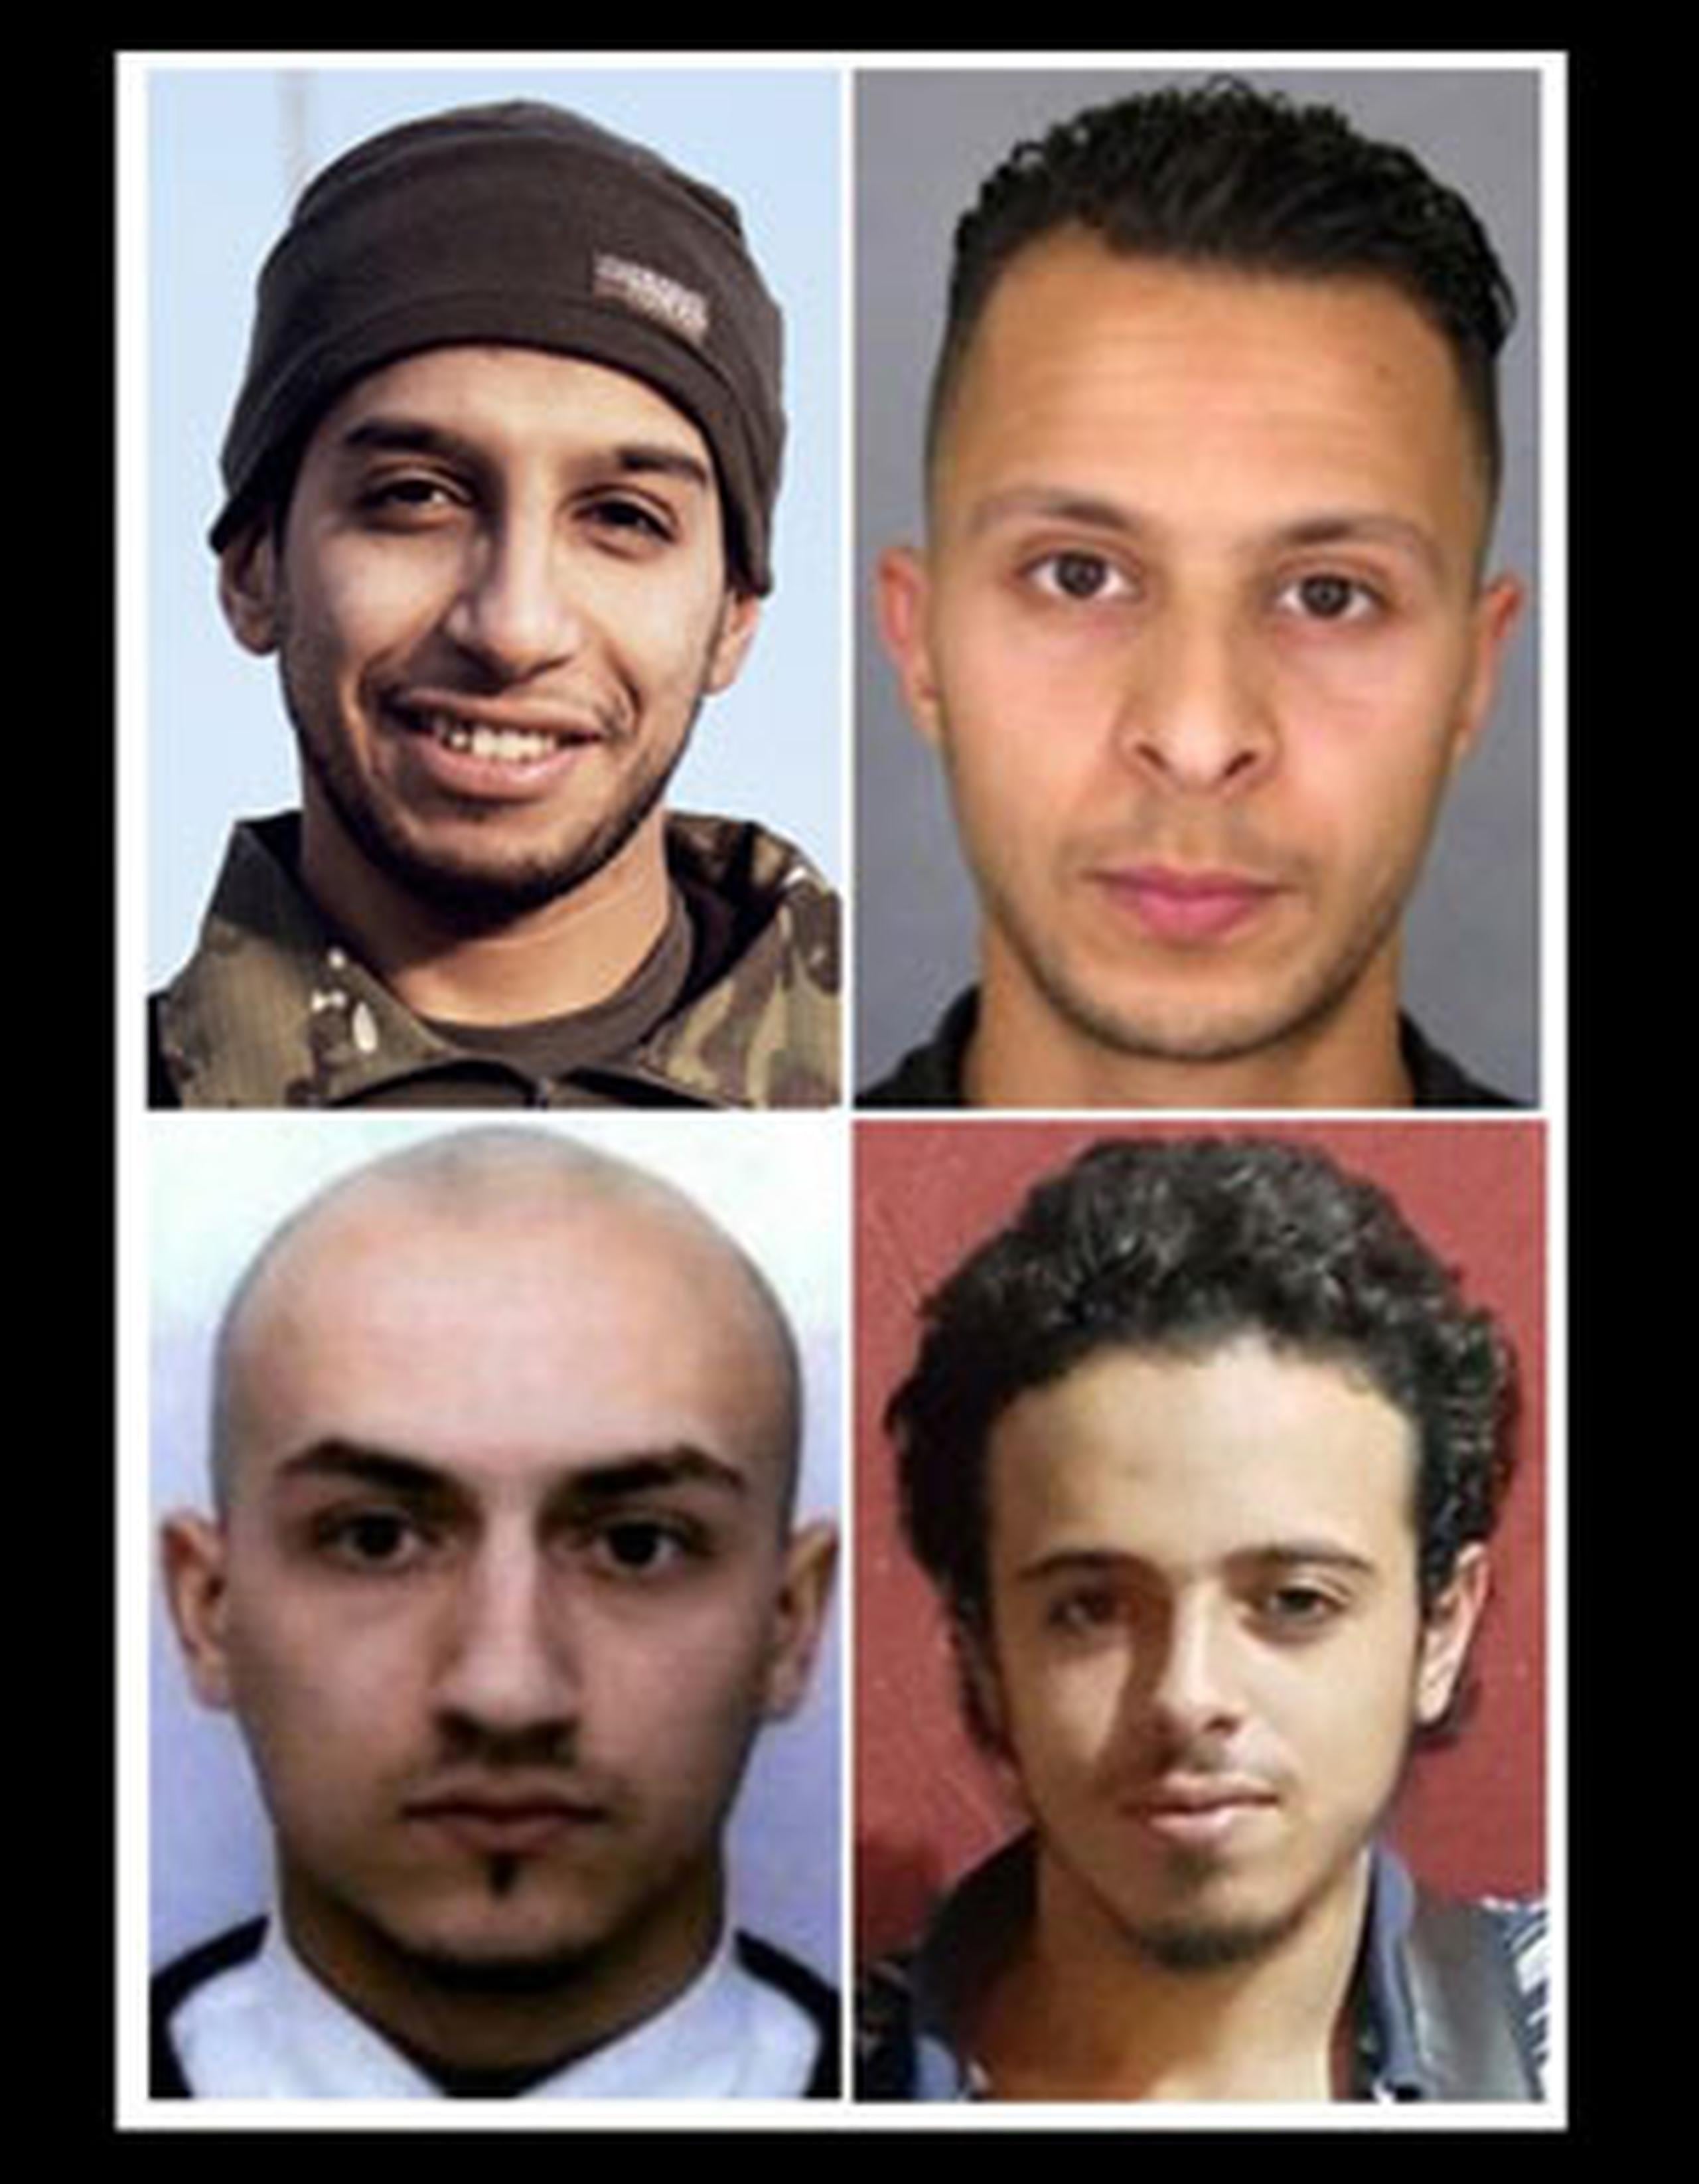 Esta combinación de fotos hechas en París el 17 de noviembre 2015 muestra cuatro hombres, dos terroristas suicidas que murieron durante el 13 de noviembre de 2015 en los ataques de París, y otros dos sospechosos de estar implicados. En parte superior, desde la izquierda, el presunto autor intelectual del ataque en general,  el belga de 28 años Abdelhamid Abaaoud. A la derecha, el sospechoso Salah Abdeslam, de 26 años. Debajo, a la derecha, Bilal Hadfi, de 20, uno de los terroristas suicidas que se inmoló fuera del estadio Stade de France. Y a la izquierda, Samy Amimour, de 28 años, uno de los terroristas suicidas que atacaron a una sala de conciertos de París. (AFP)